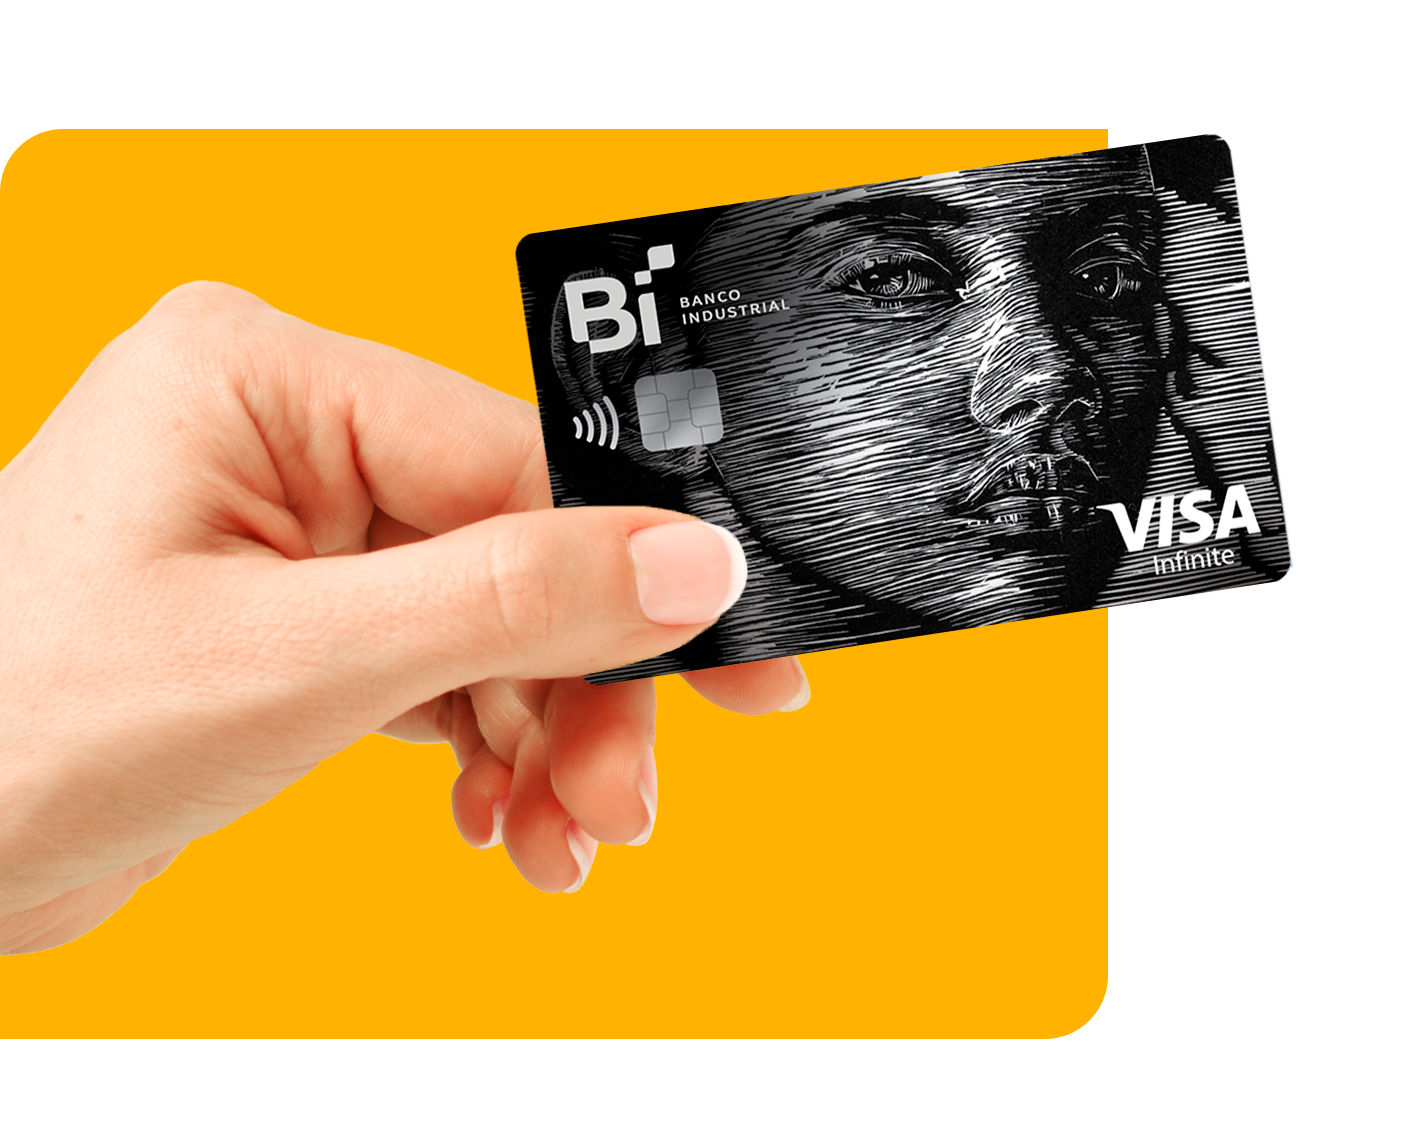 mano_tarjetas_personales_credito_visa_infinite